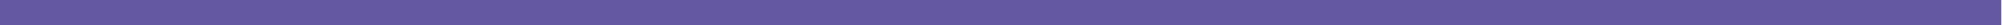 FP-Blog-紫色